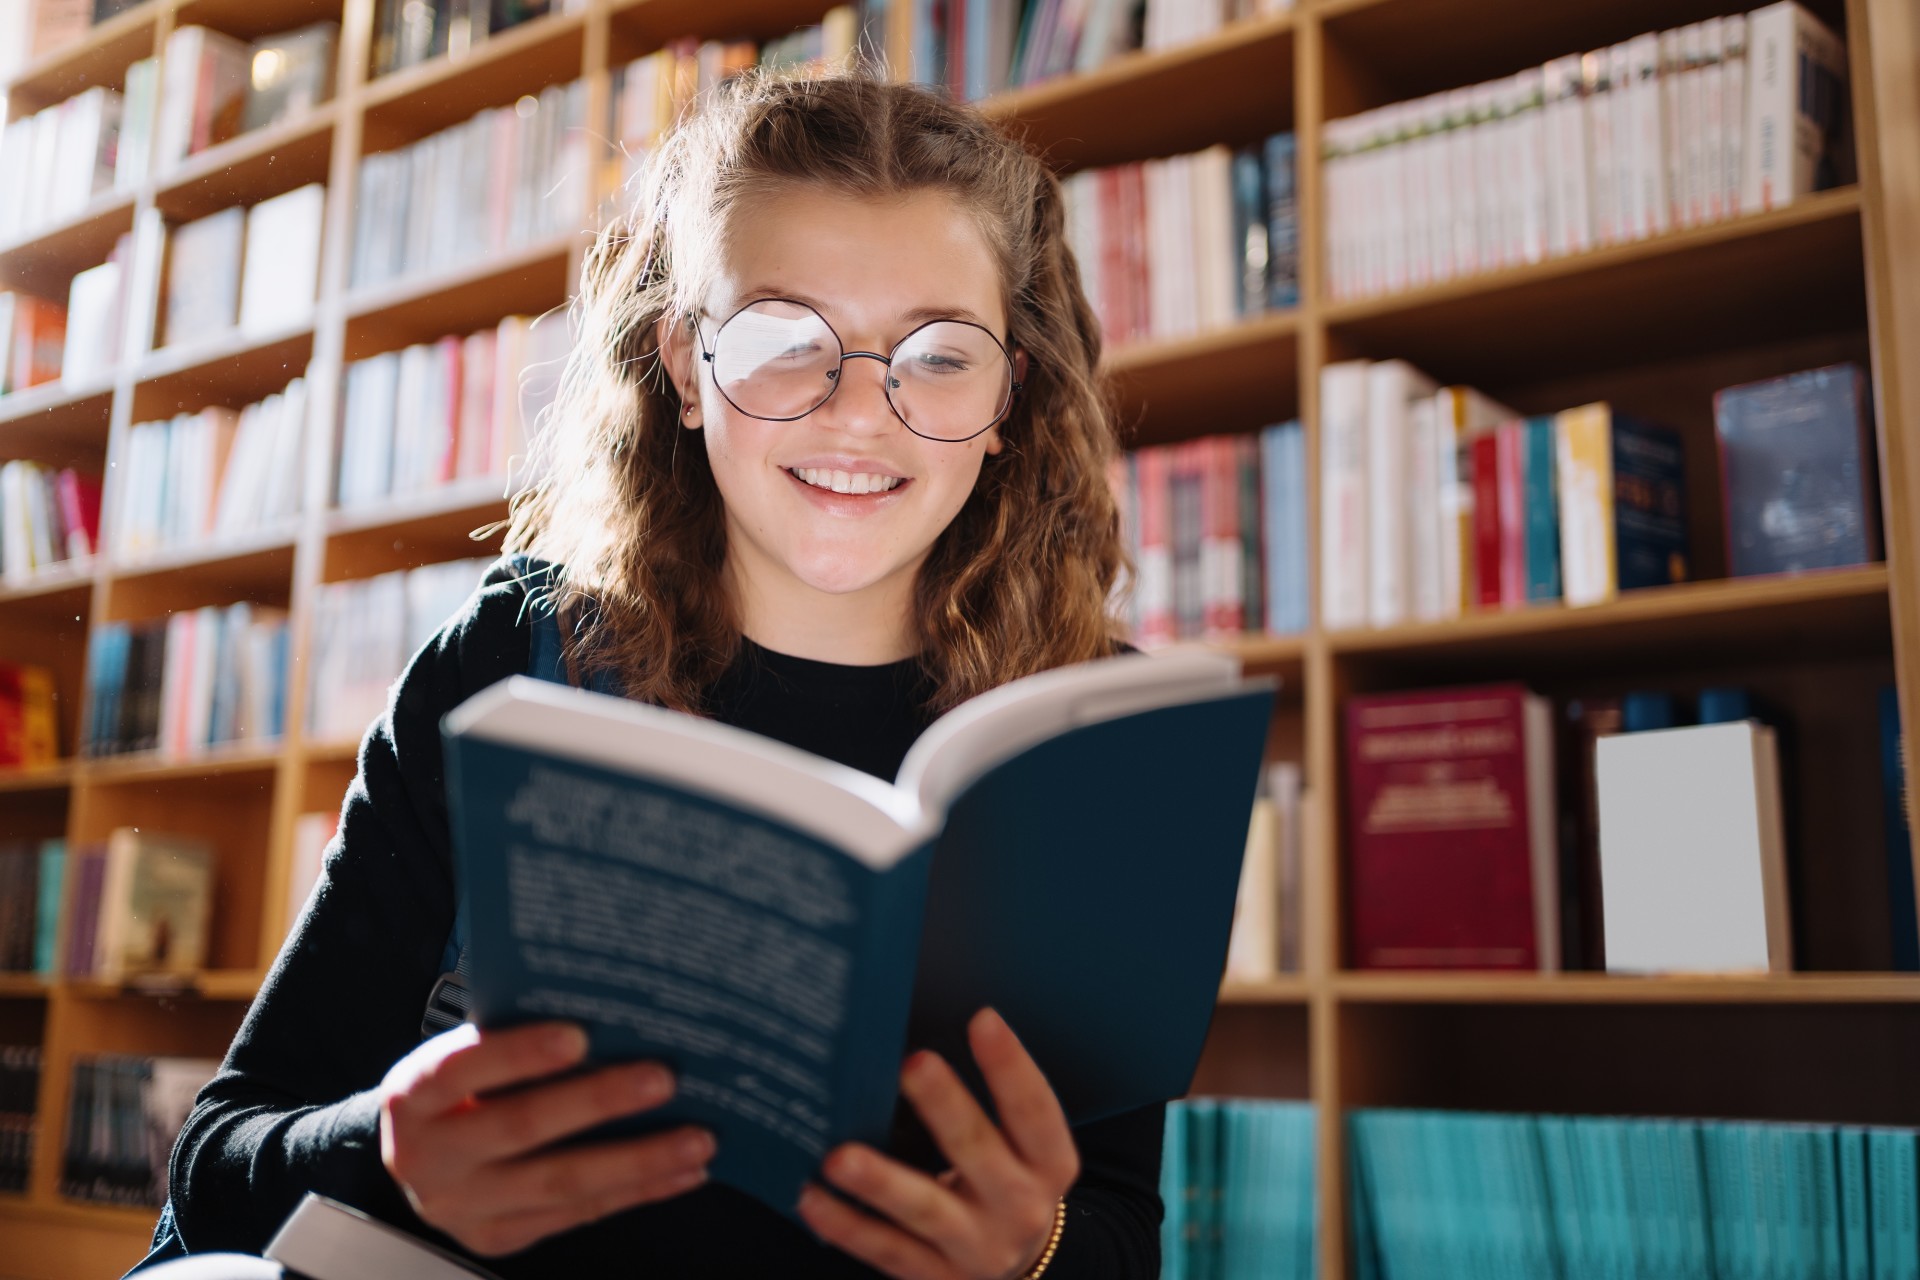 Młoda dziewczyna stoi przed ragałami pełnymi książek. Jedną książkę trzyma otwartą i czyta ją z uśmiechem na twarzy.